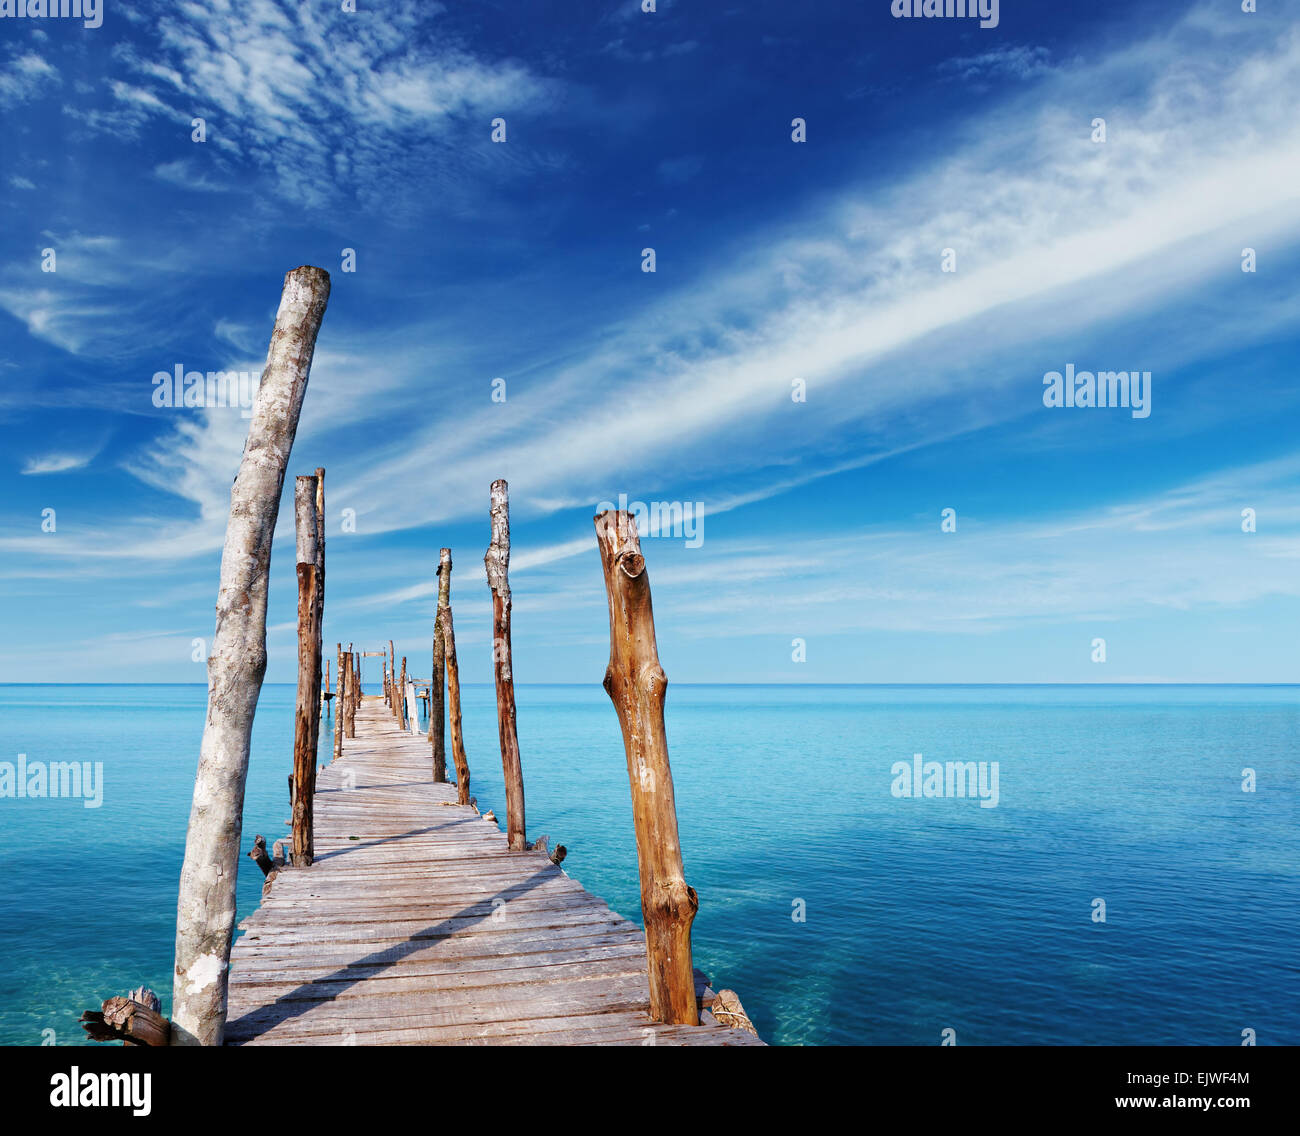 Muelle de madera en una isla tropical, el mar y el cielo azul, Tailandia Foto de stock